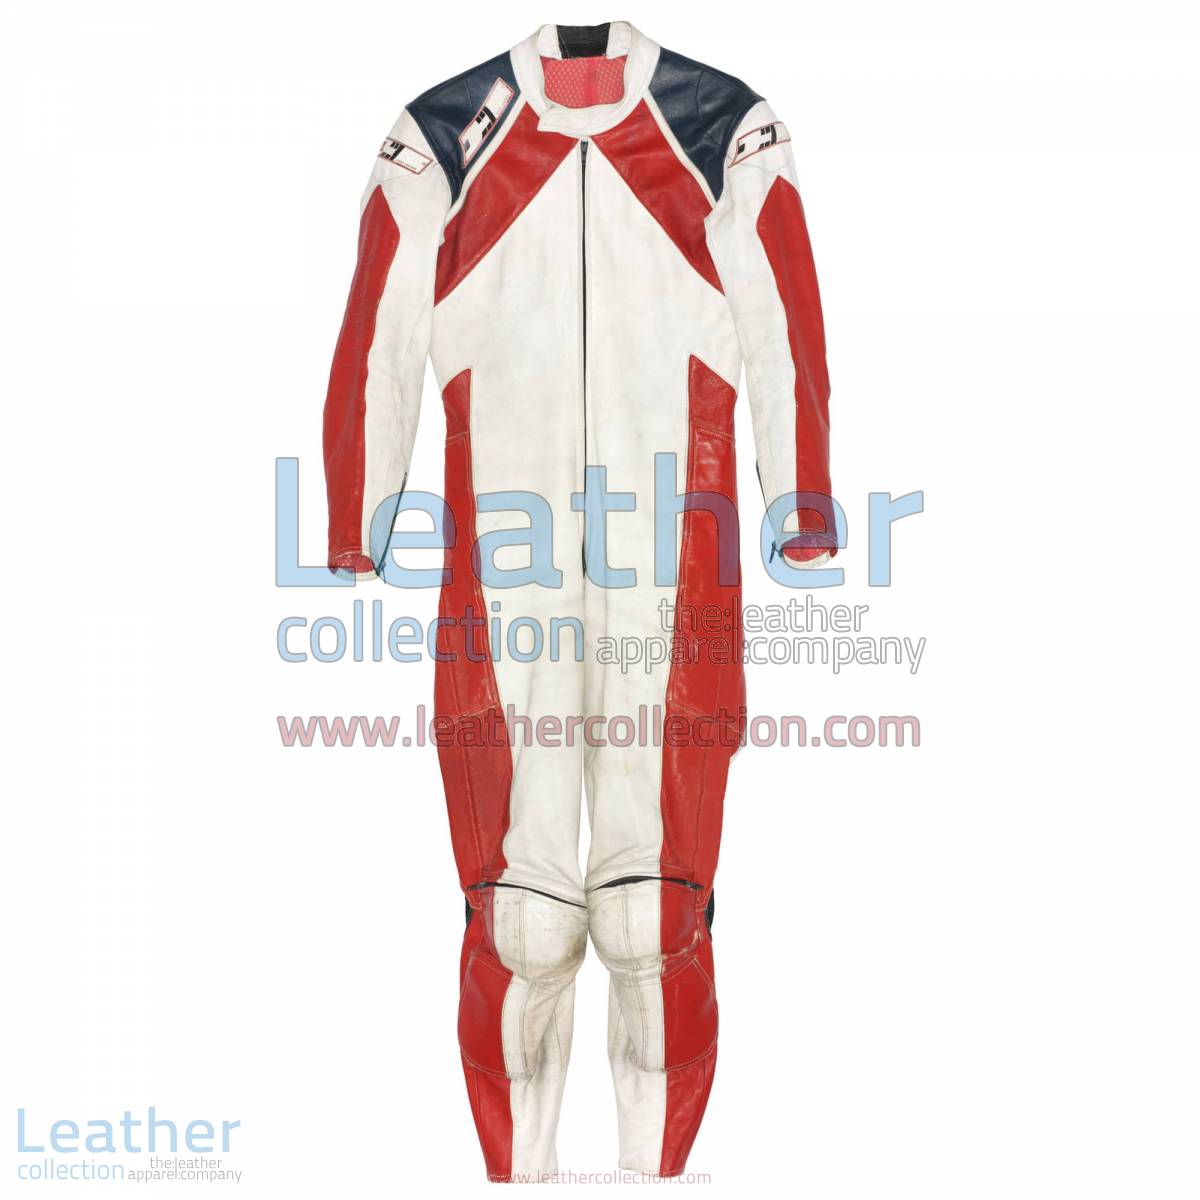 Mario Lega Ducati 1979 Racing Suit